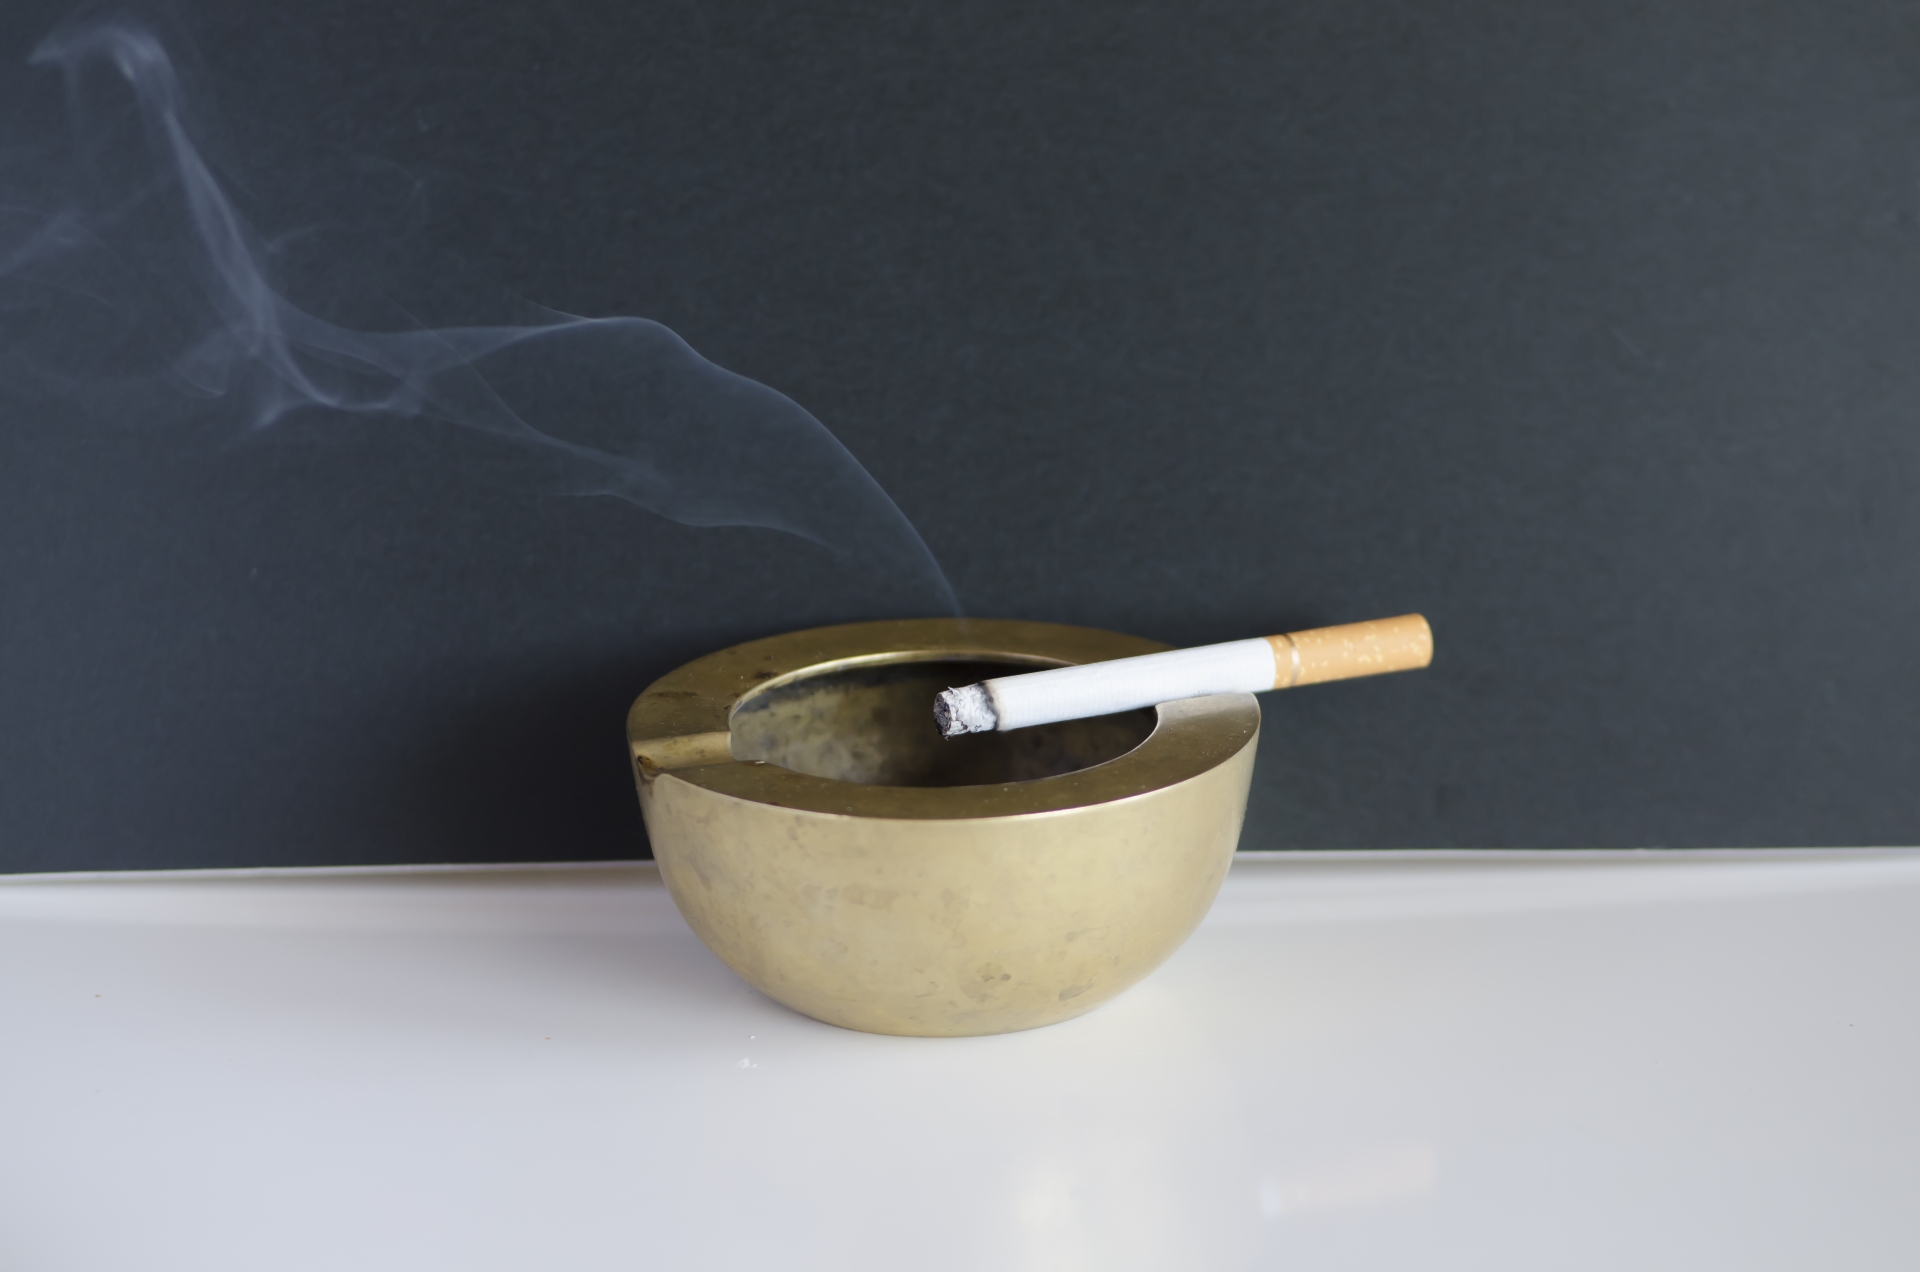 たばこの不始末が出火原因が第二位。副流煙の影響もあるので室内は禁煙に。